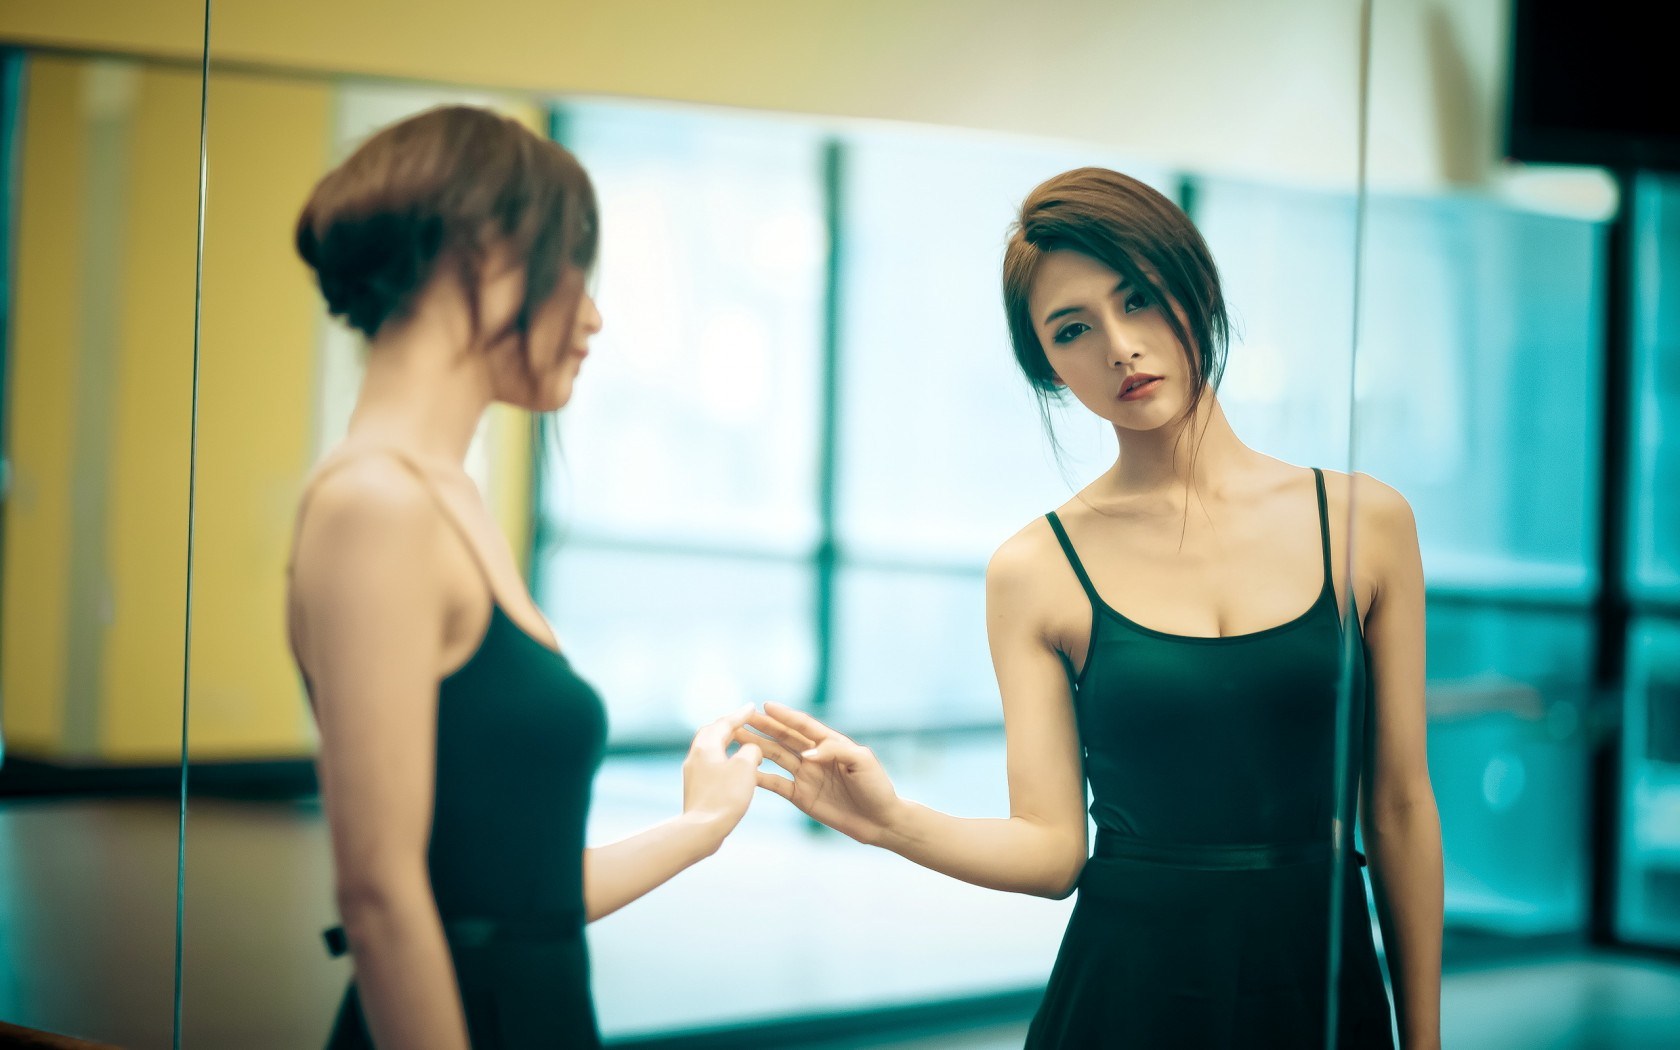 Beautiful Girl Mirror